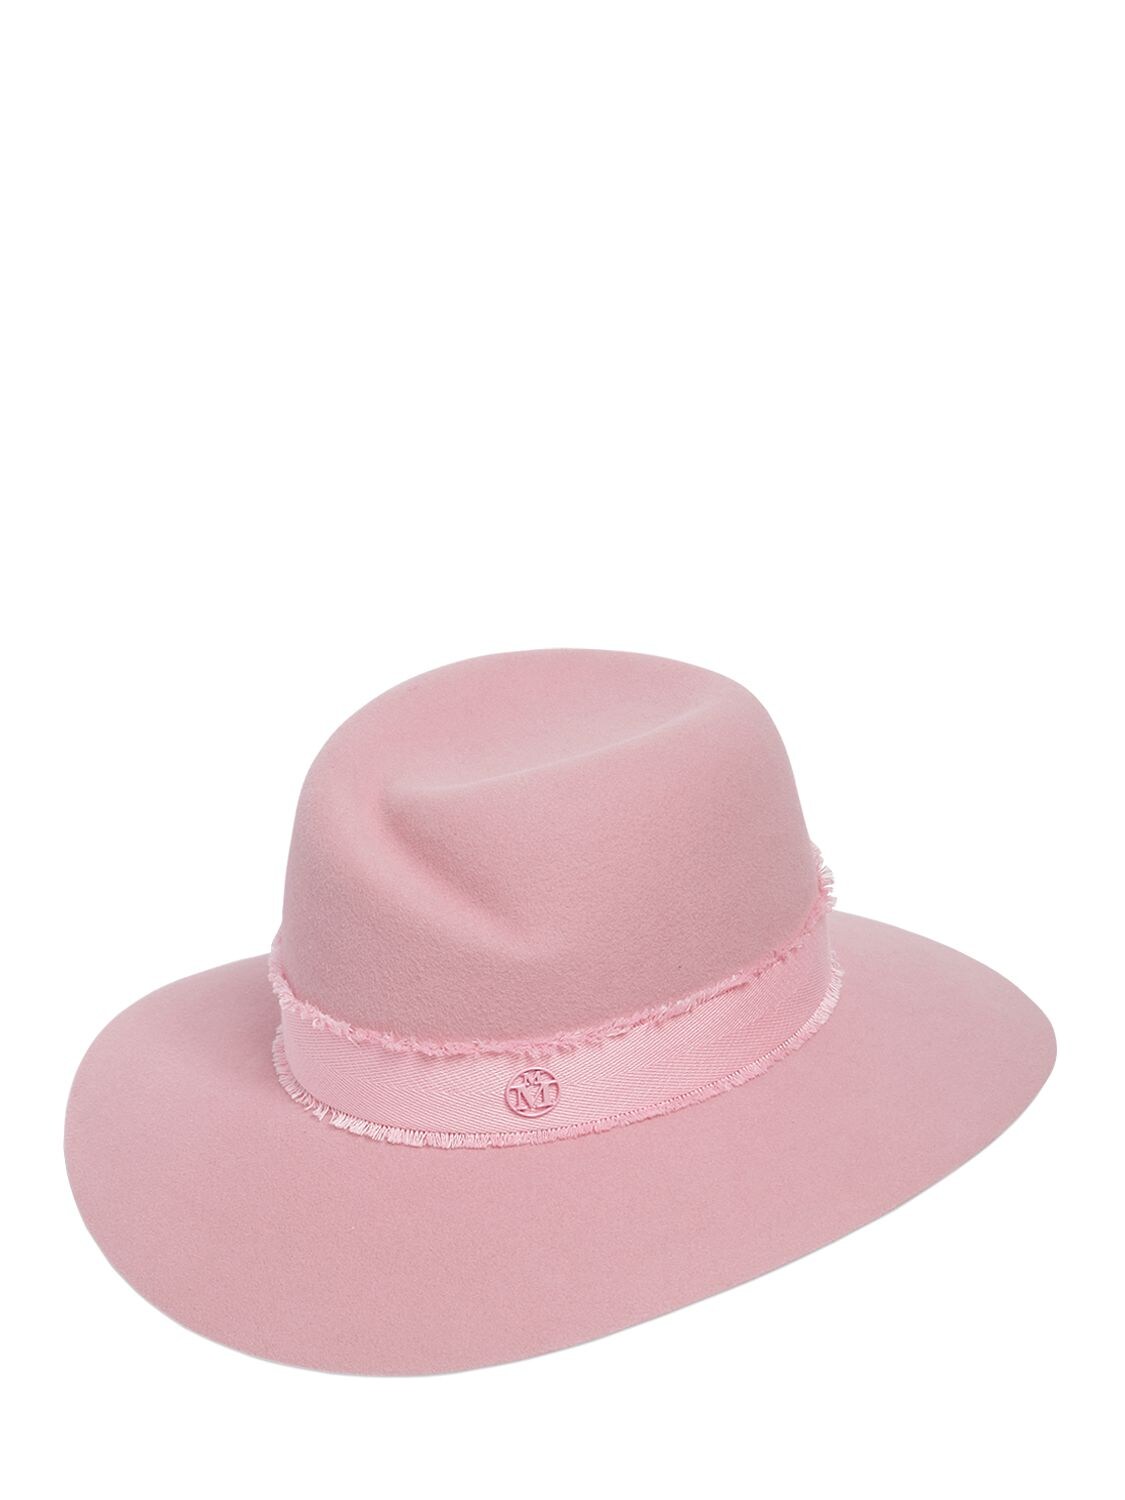 Maison Michel Virginie Rabbit Fur Felt Hat In Pink